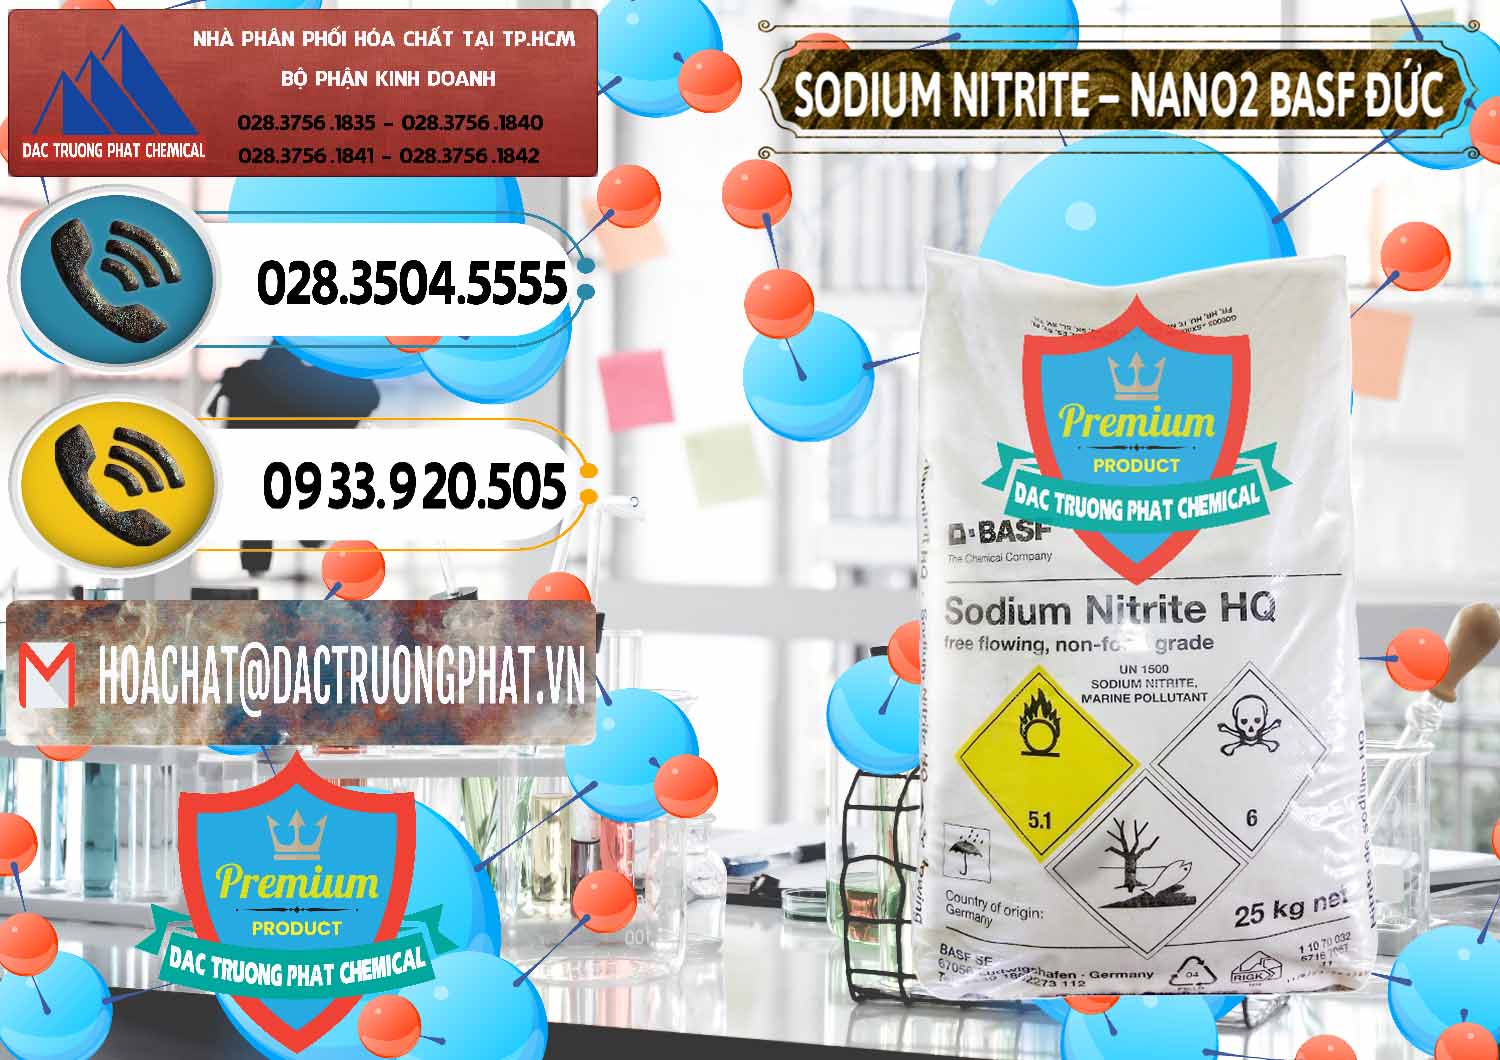 Nơi chuyên kinh doanh & bán Sodium Nitrite - NANO2 Đức BASF Germany - 0148 - Nơi phân phối _ cung cấp hóa chất tại TP.HCM - hoachatdetnhuom.vn